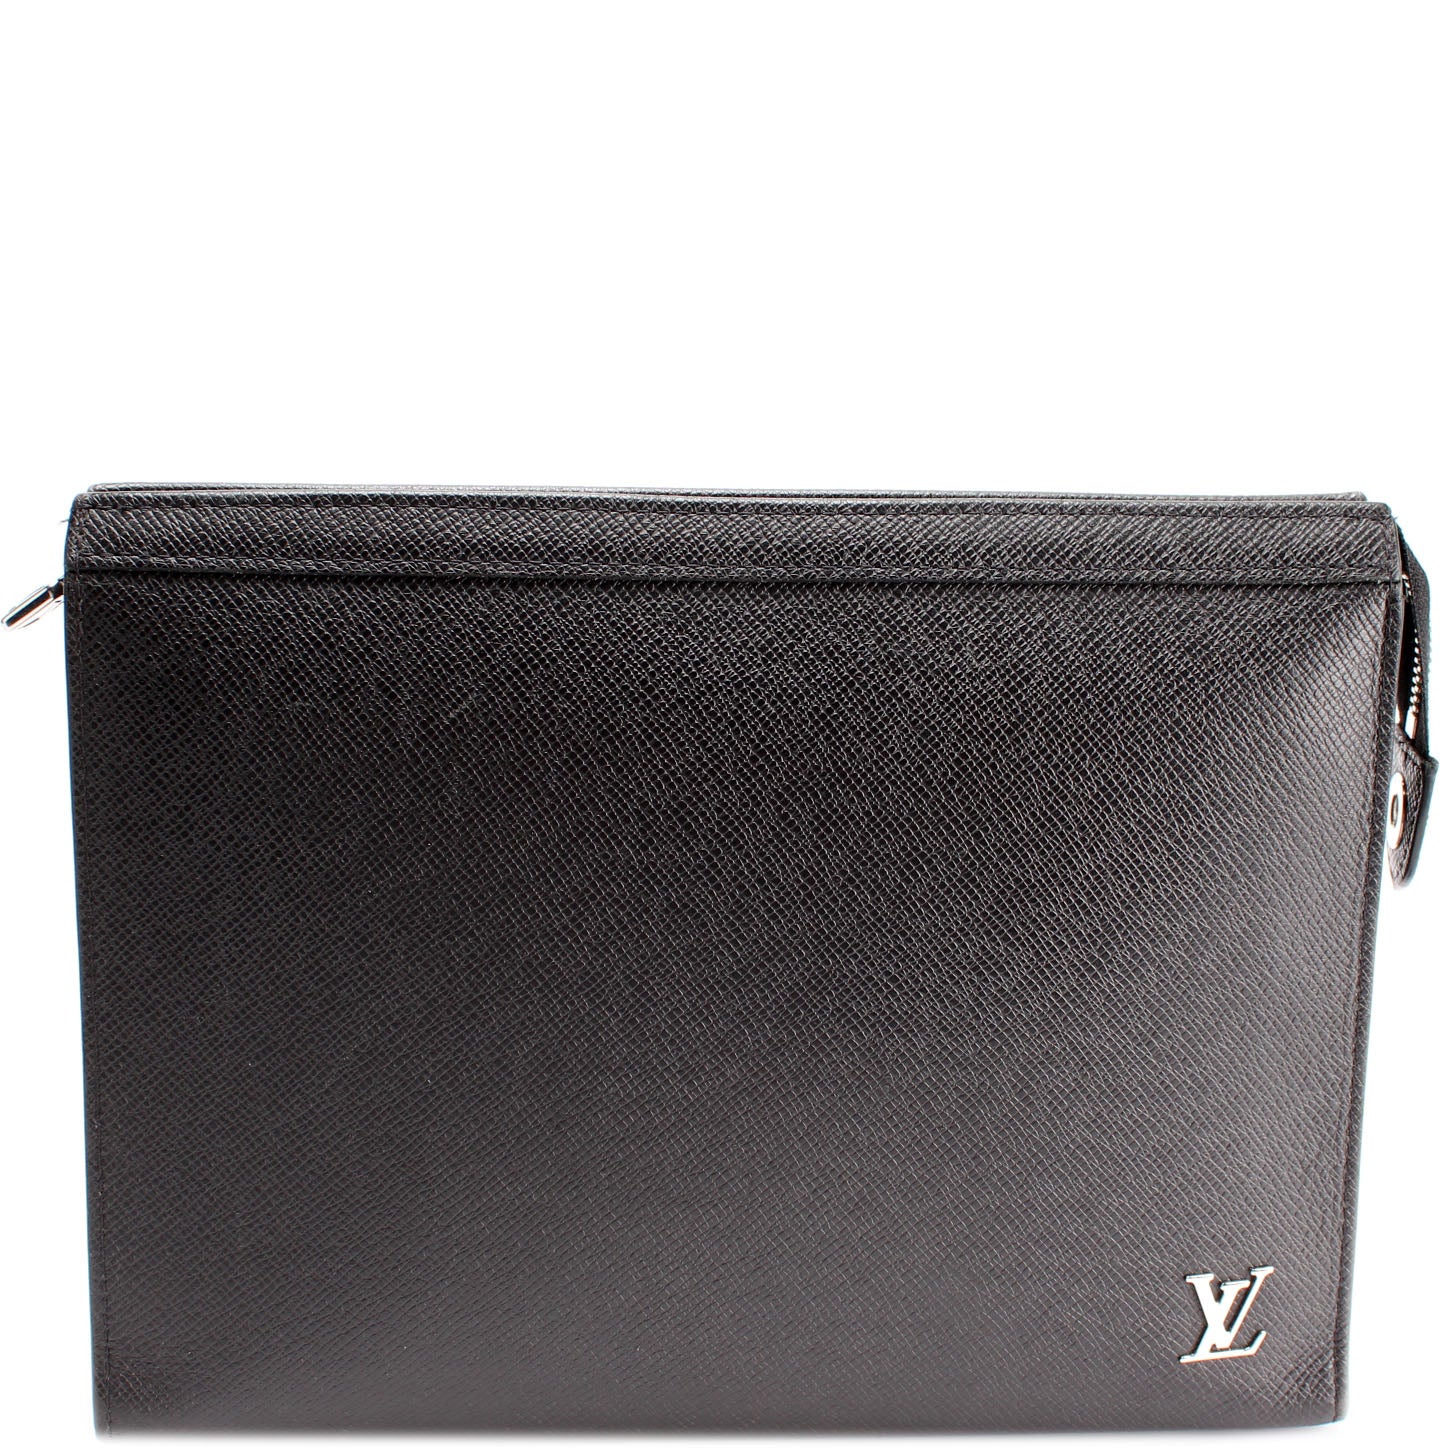 LOUIS VUITTON Louis Vuitton Taiga Pochette Voyage MM Second Bag